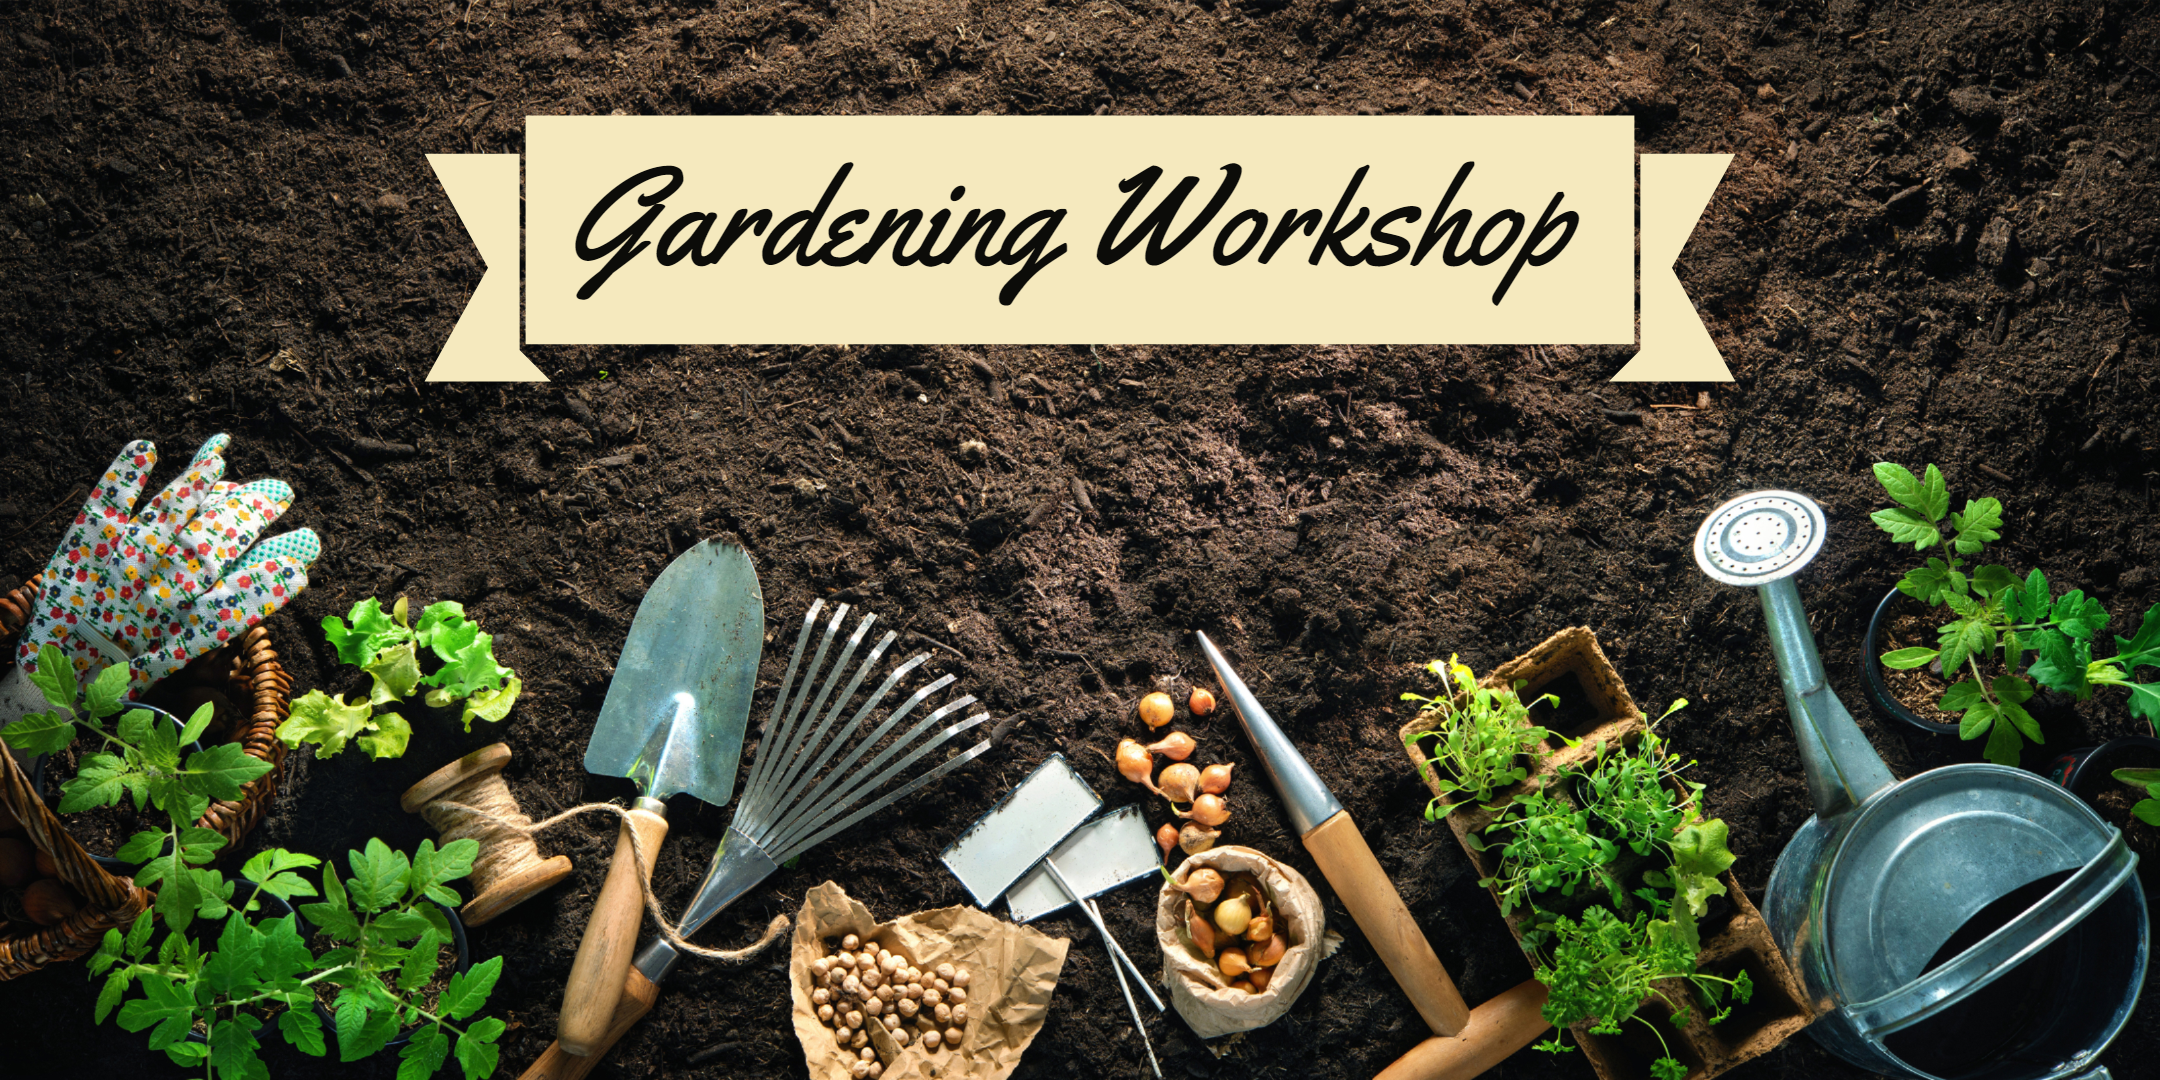 Second Saturdays: Interactive Gardening Workshop